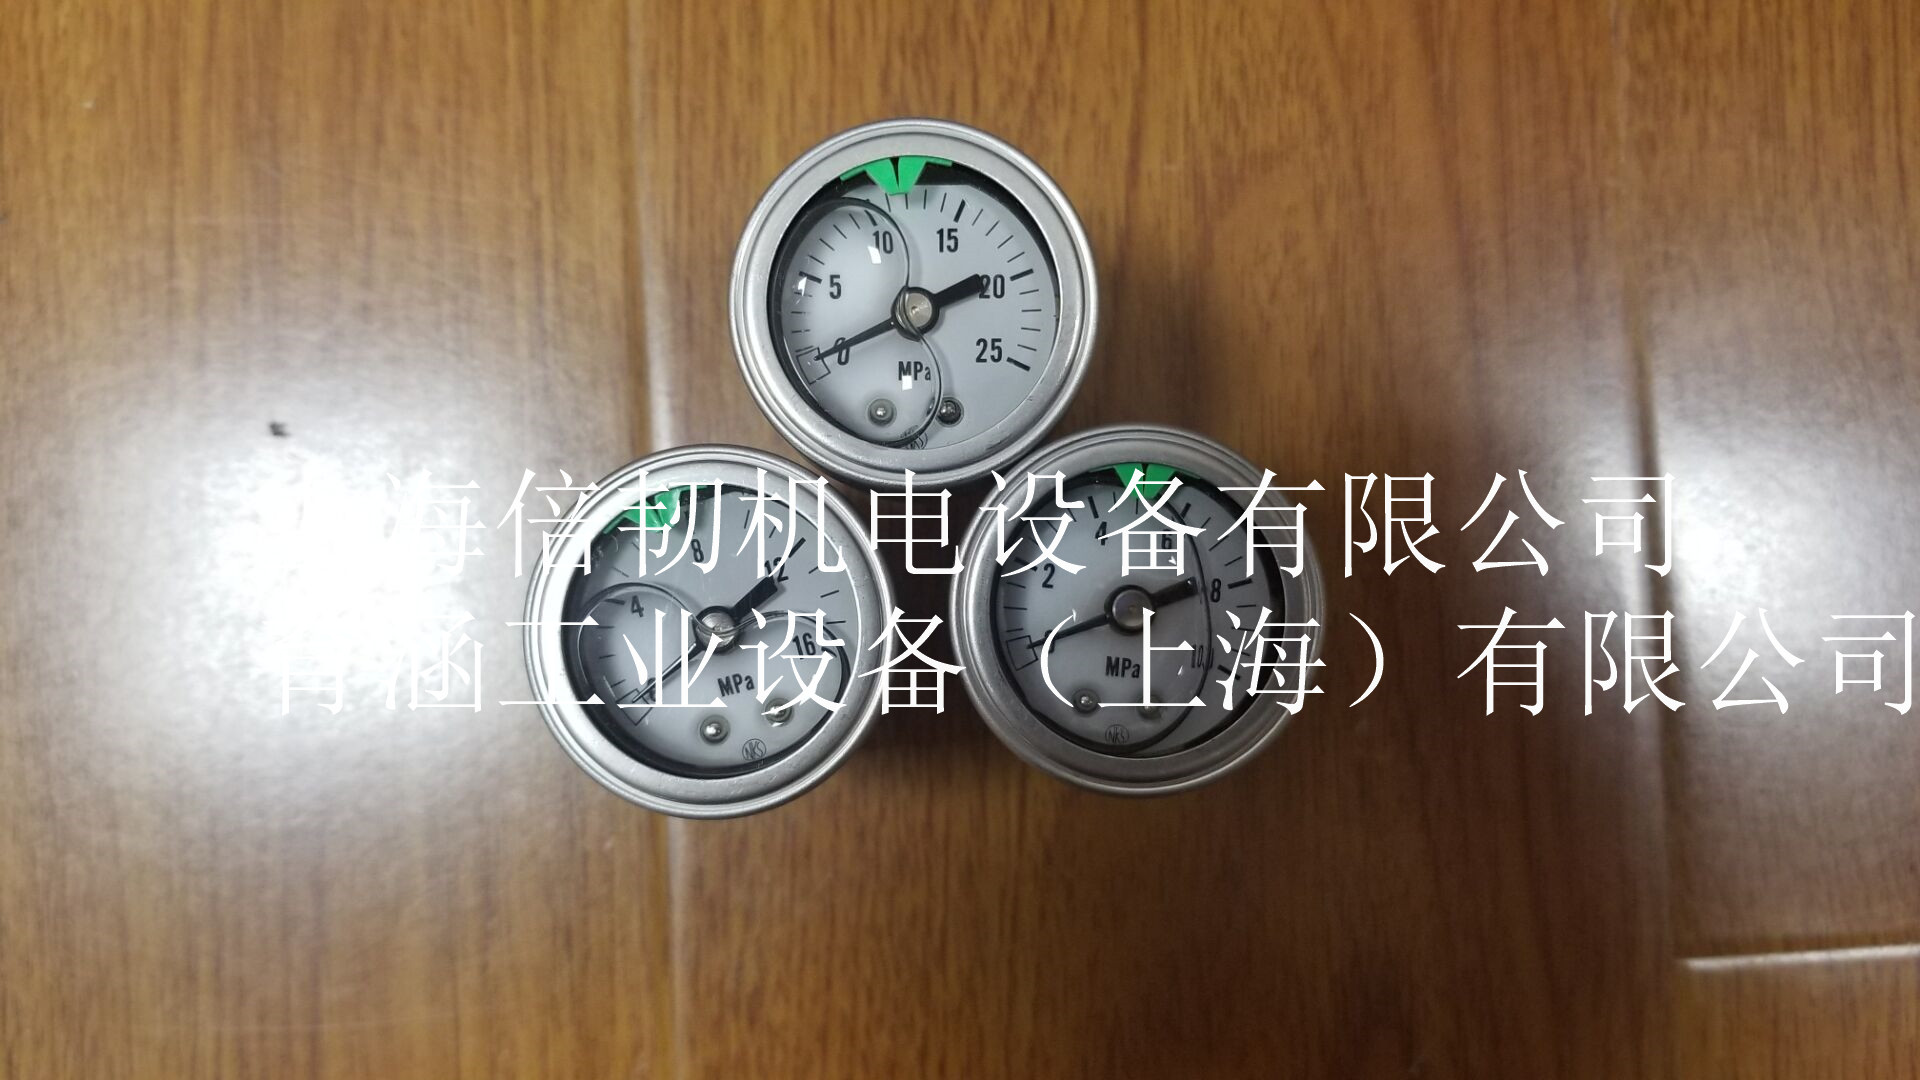 长野株式会社压力表 GV95-671